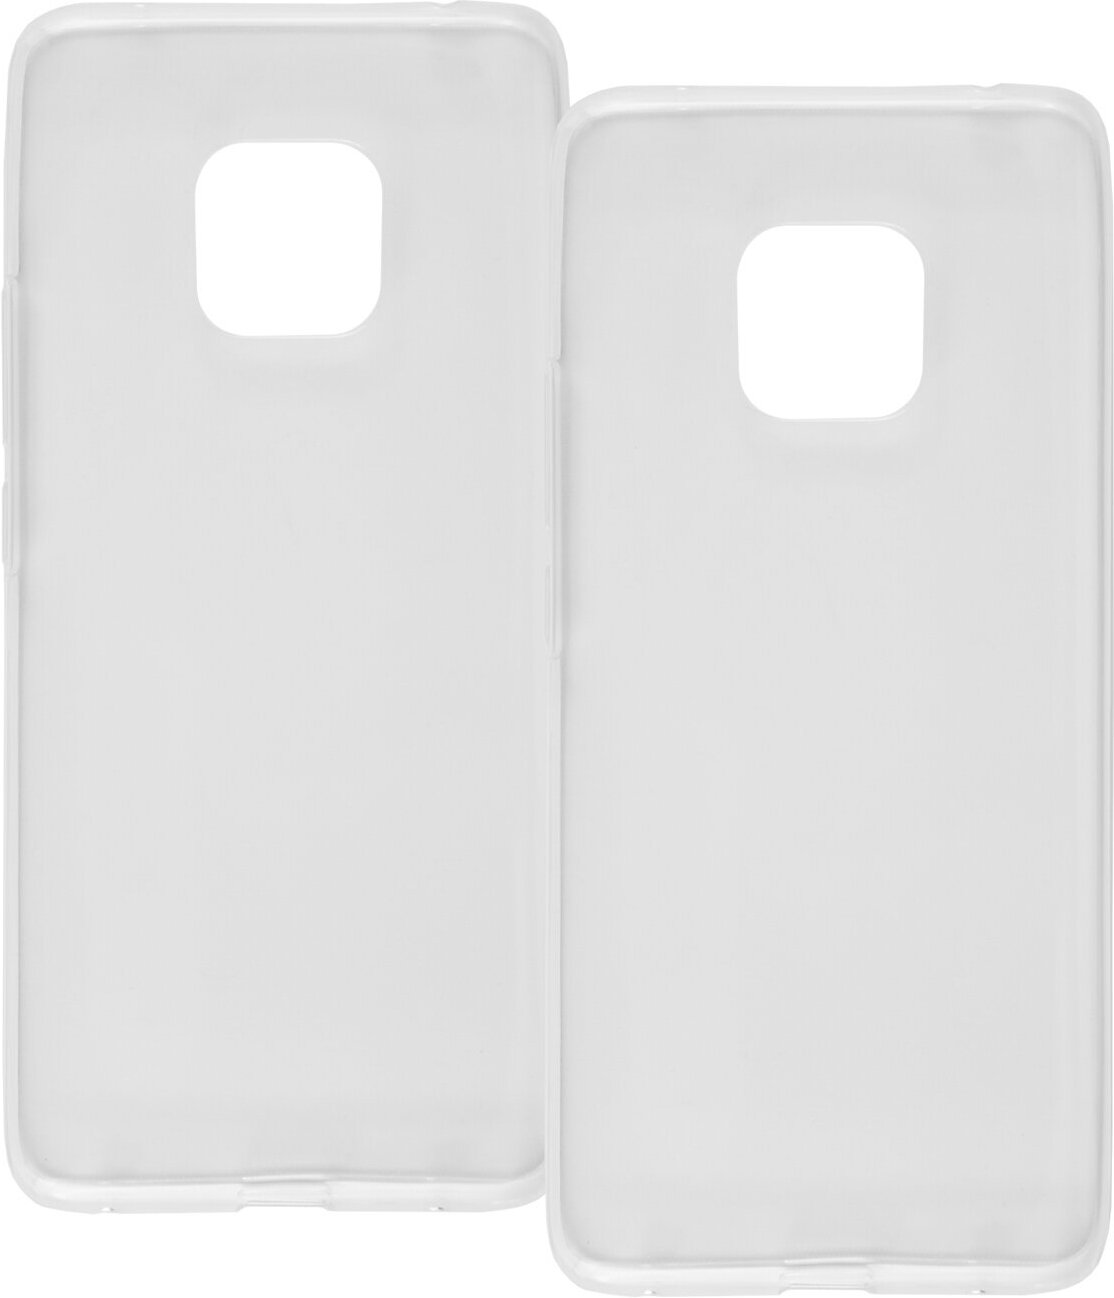 Накладка на Huawei Mate 20 pro/Силиконовый чехол для телефона Хуавей Мэйт 20 Про/Бампер/Защита от царапин/Защитный чехол прозрачный, 2 шт.